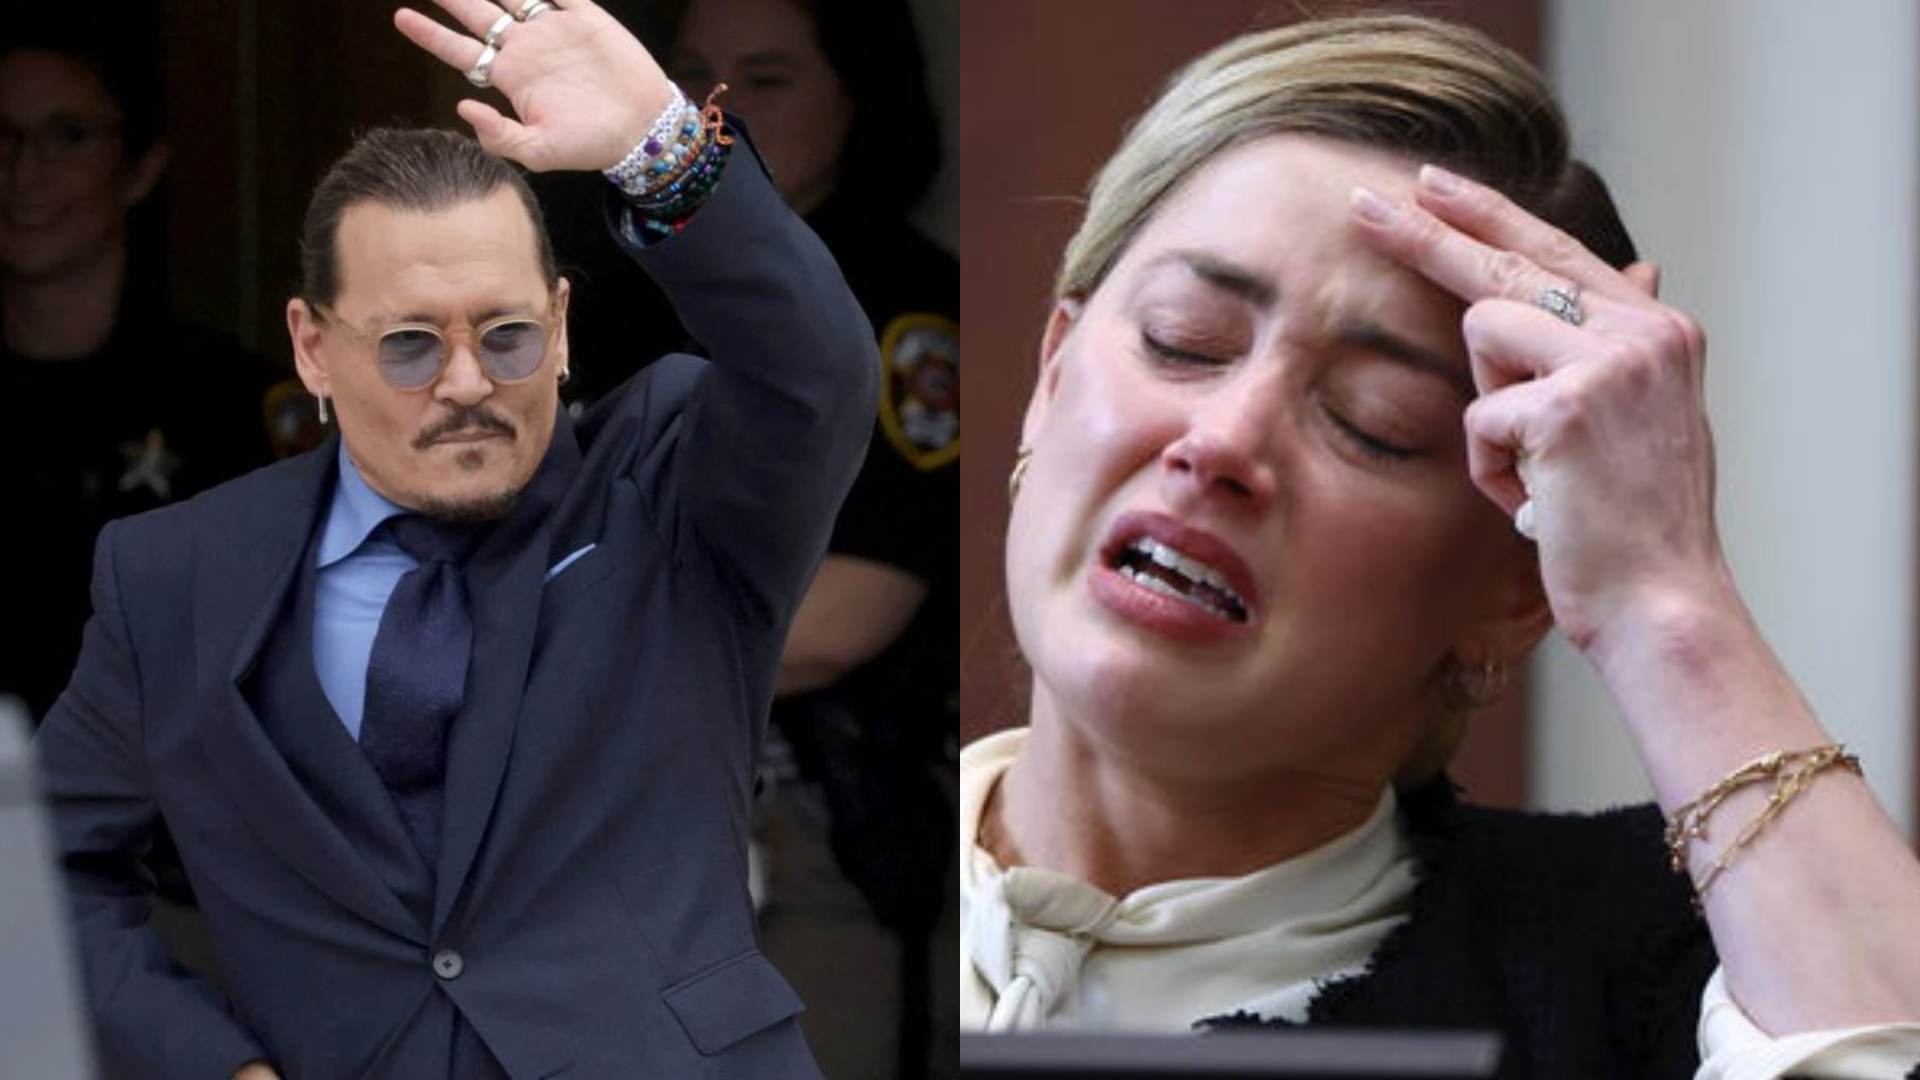 Johnny Depp al ganar esto le pagará Amber Heard por difamación